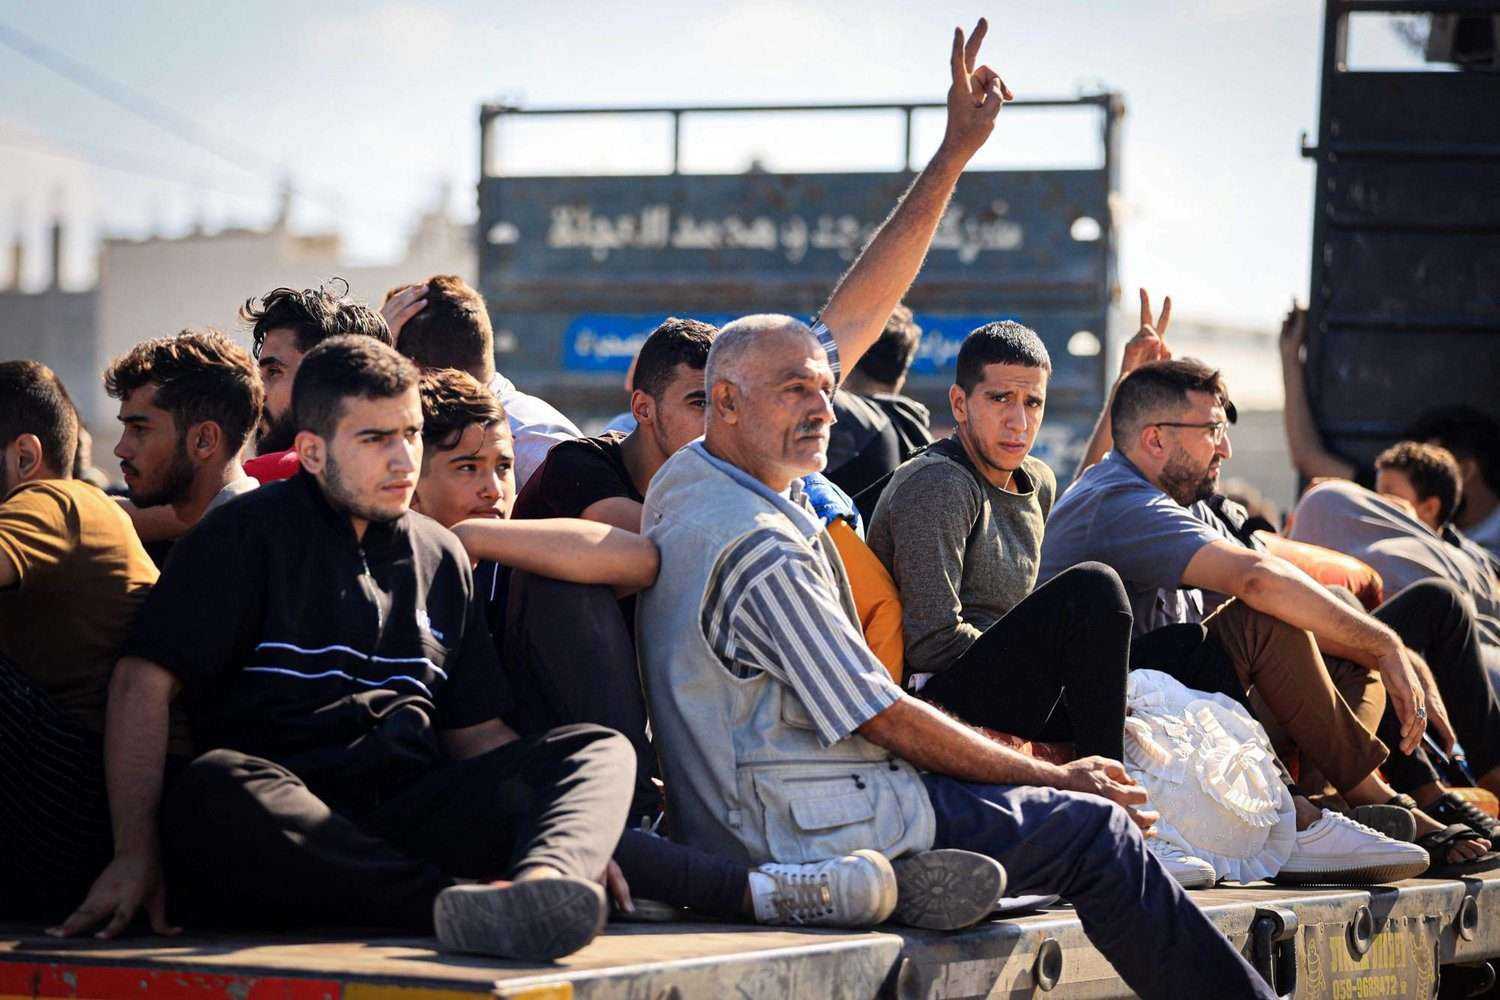 مئات النازحين يعودون لمنازلهم في غزة والشمال